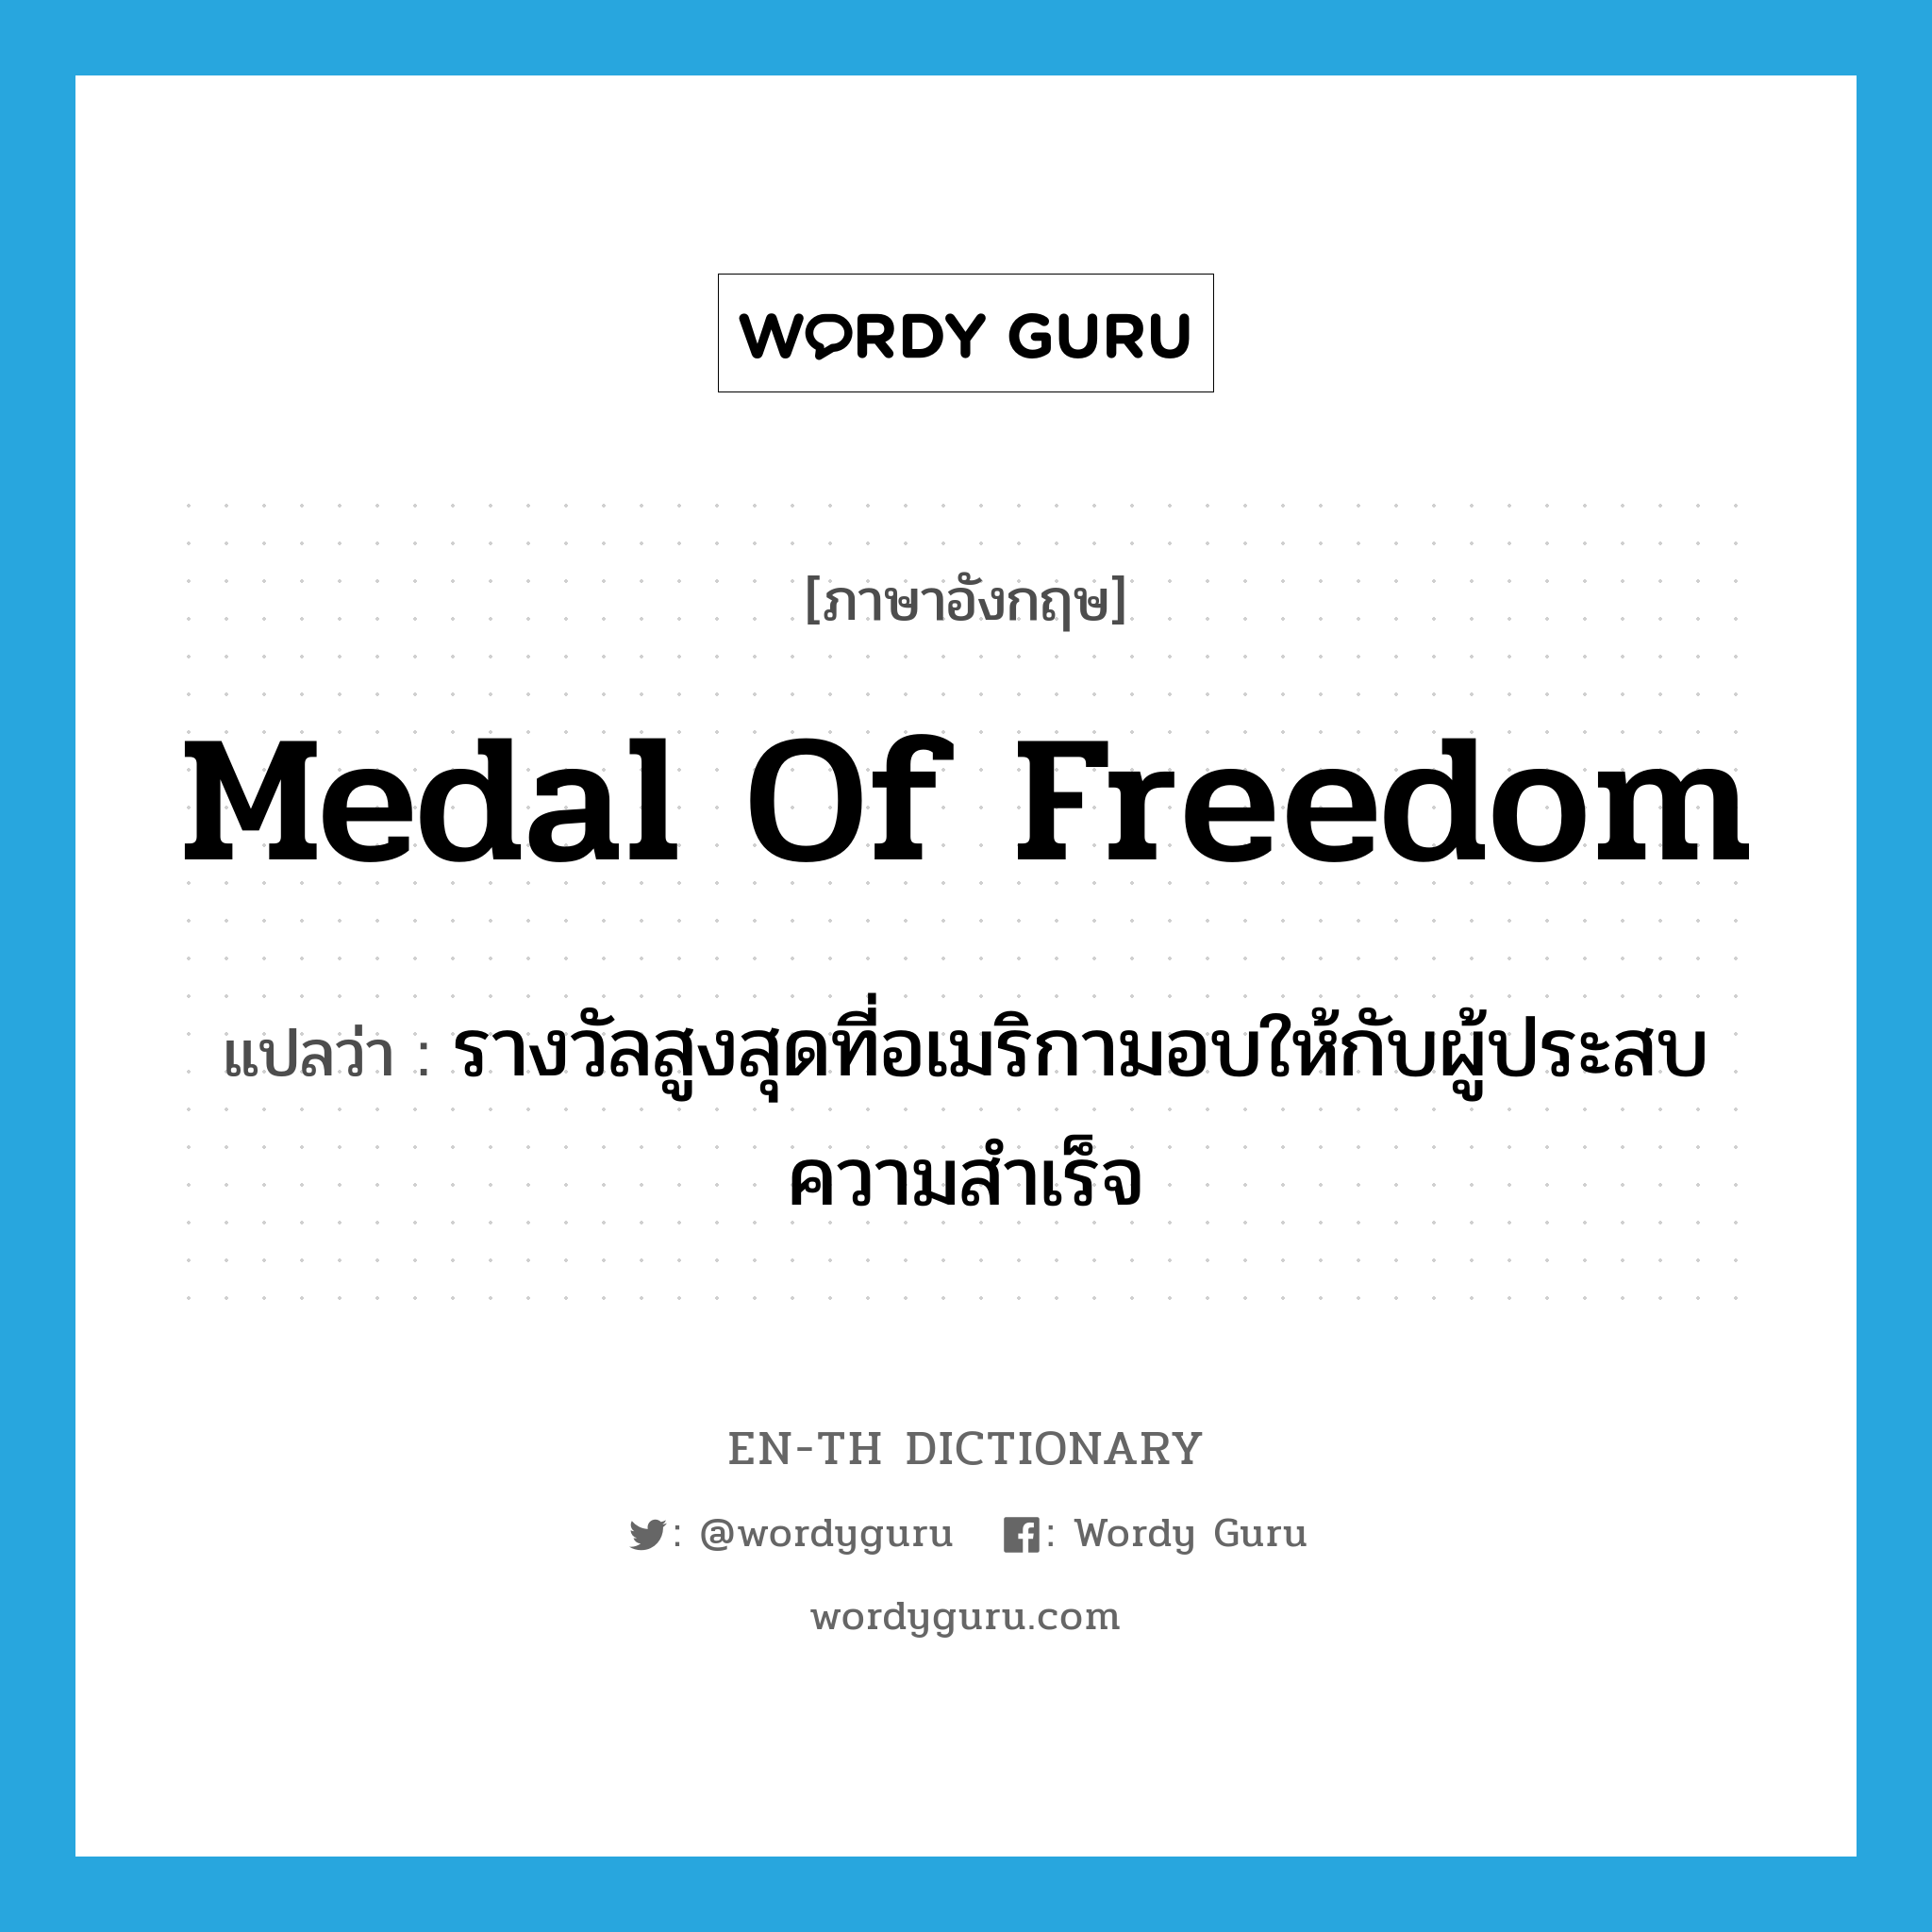 Medal of Freedom แปลว่า?, คำศัพท์ภาษาอังกฤษ Medal of Freedom แปลว่า รางวัลสูงสุดที่อเมริกามอบให้กับผู้ประสบความสำเร็จ ประเภท N หมวด N